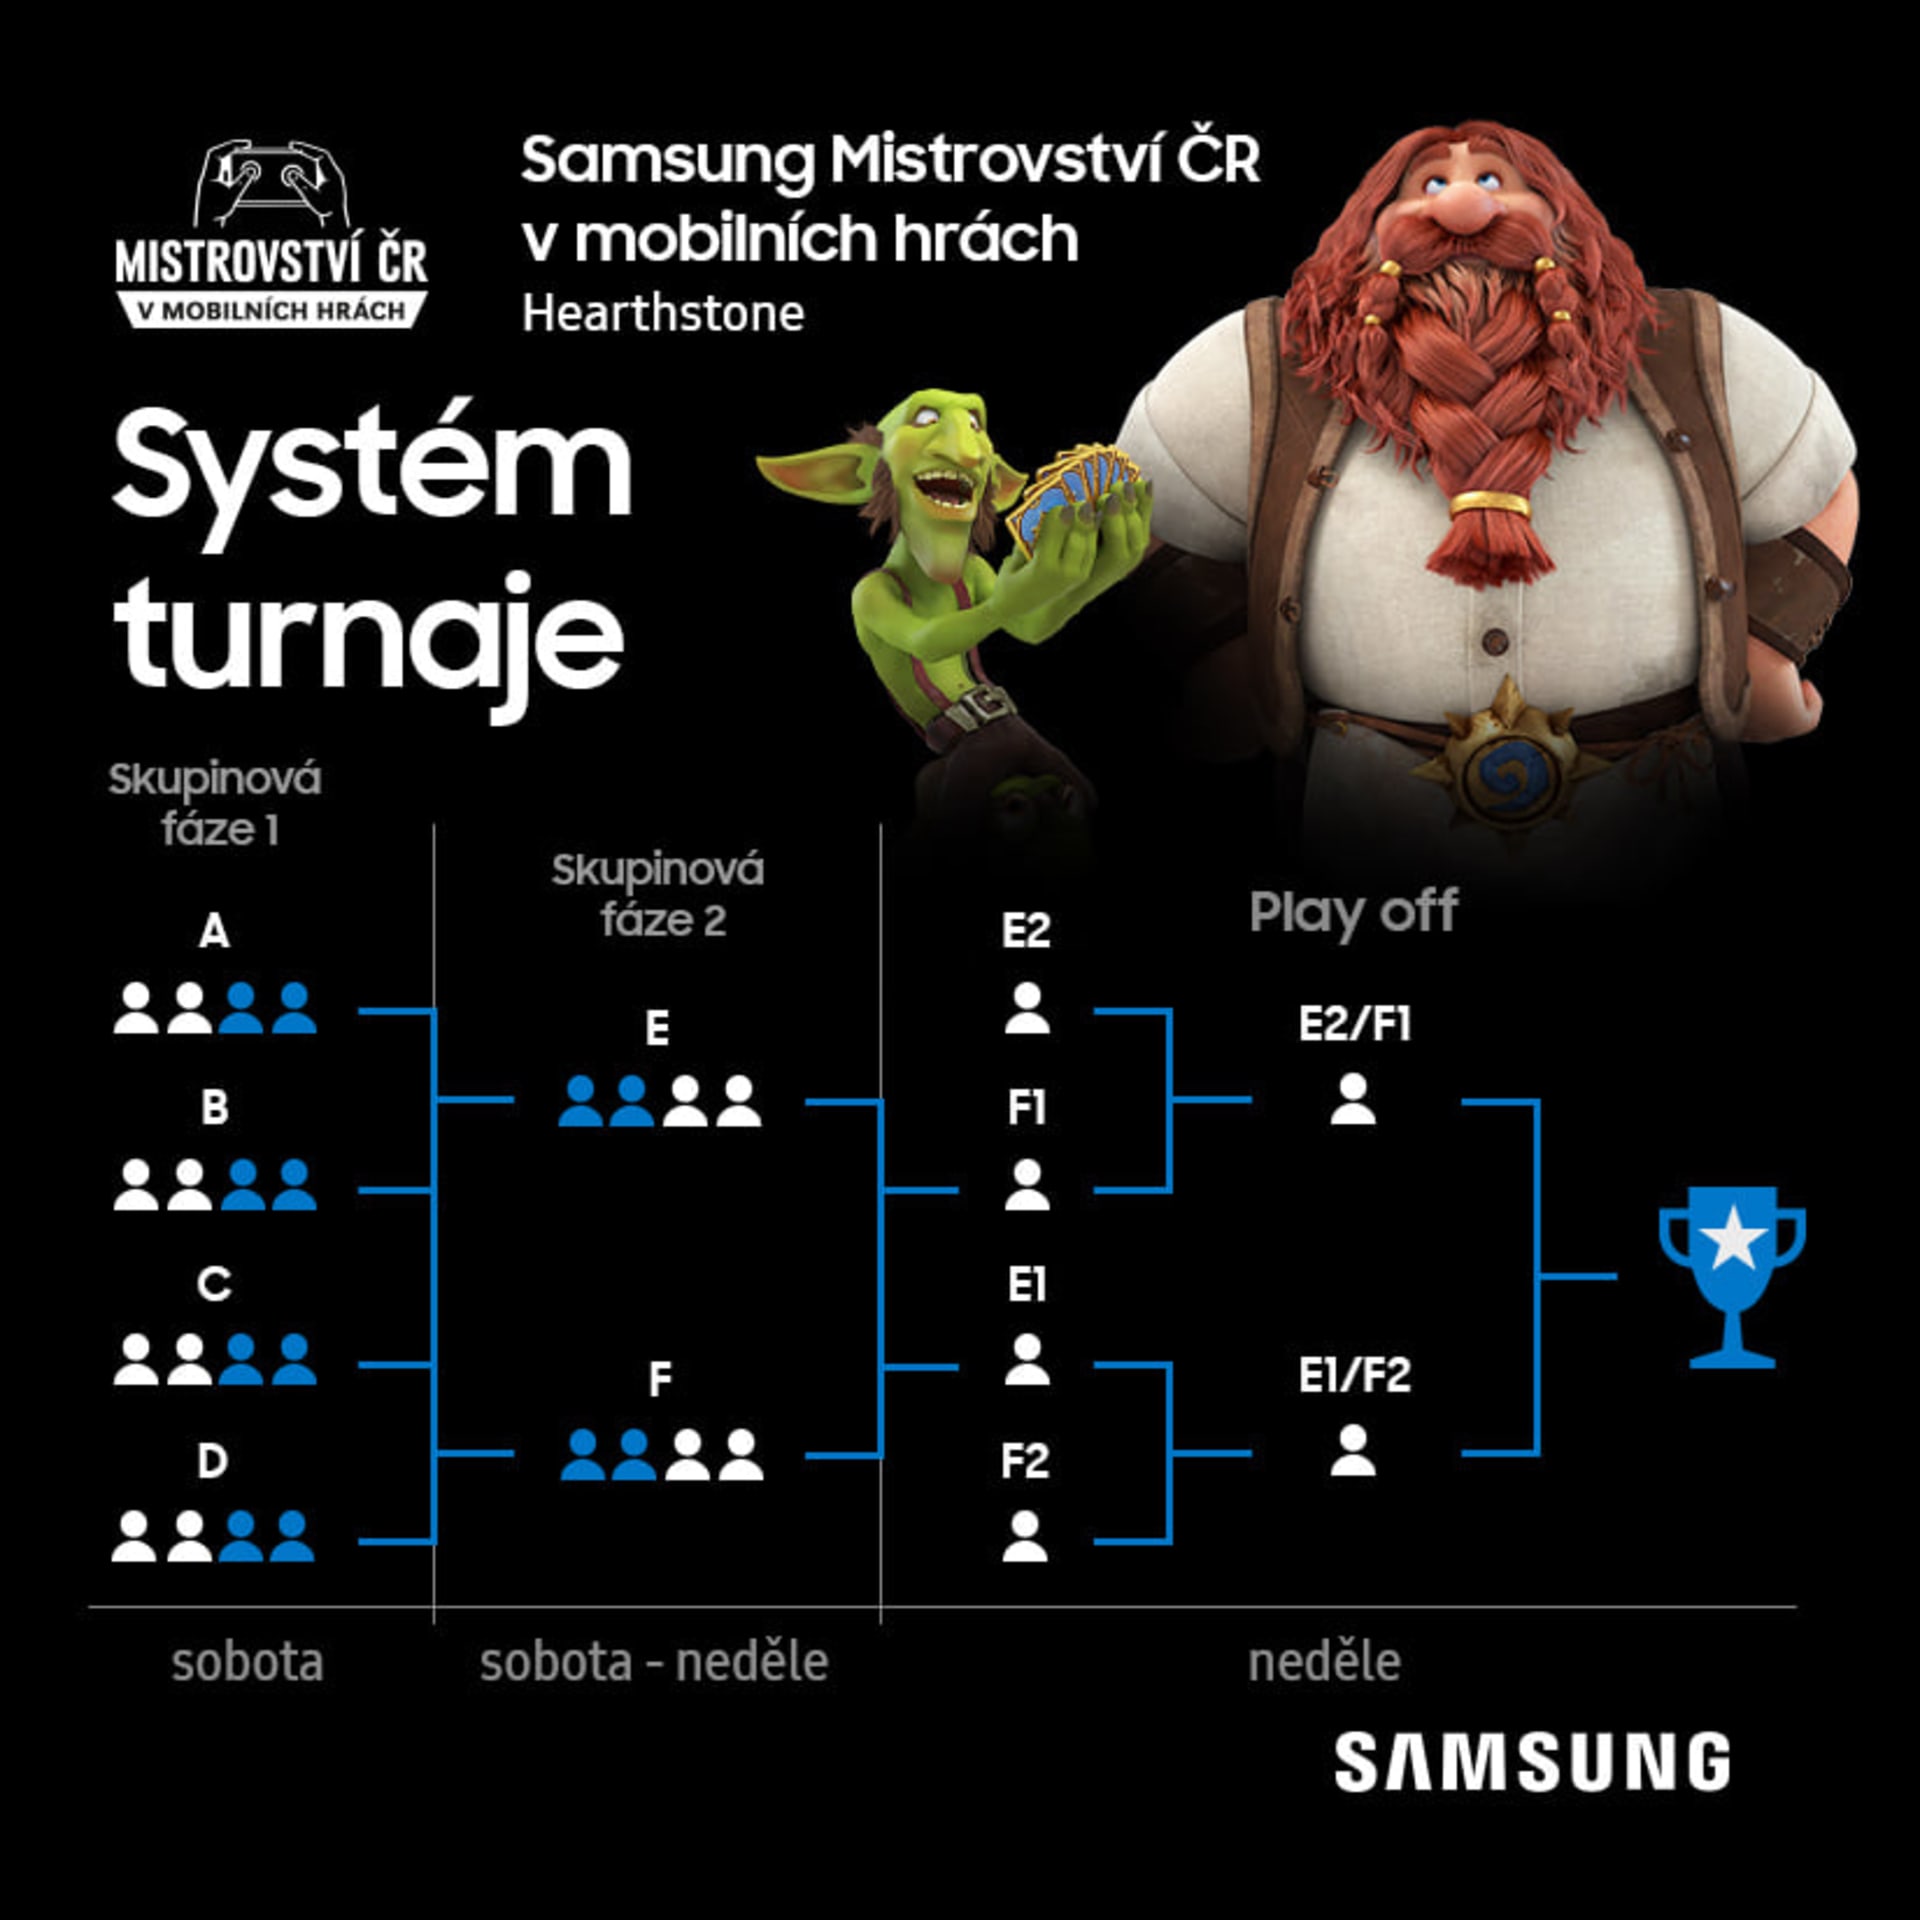 Samsung MČR v mobilních hrách 2020, odhalení systému